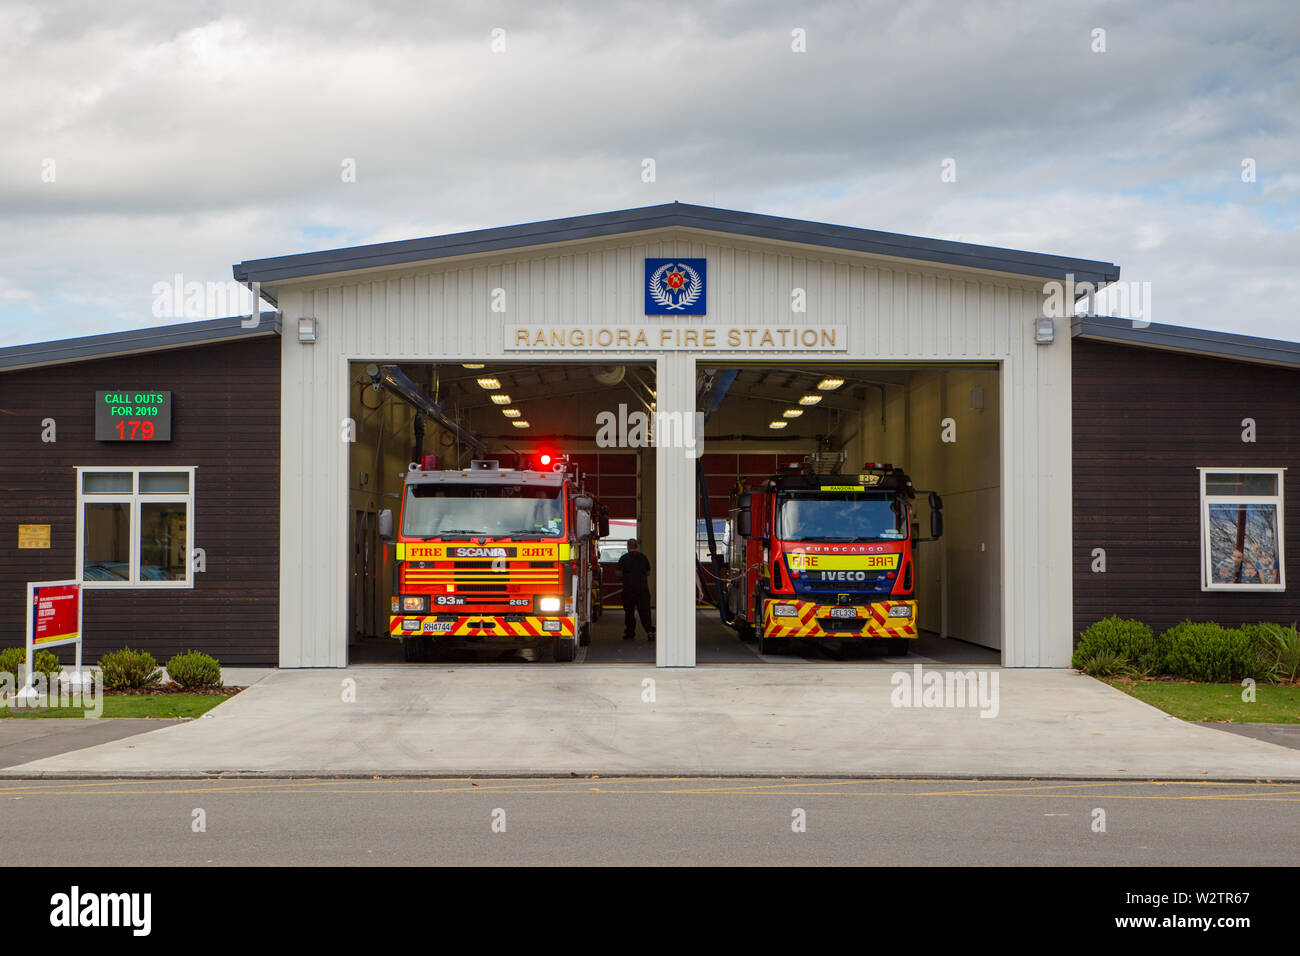 Rangiora, Canterbury, Neuseeland, 16. Juni 2019: Ein Feuer crew Antworten auf die dringenden Sirene und das Team verlassen Sie die Station, nachdem er ihr Feuer figh Stockfoto